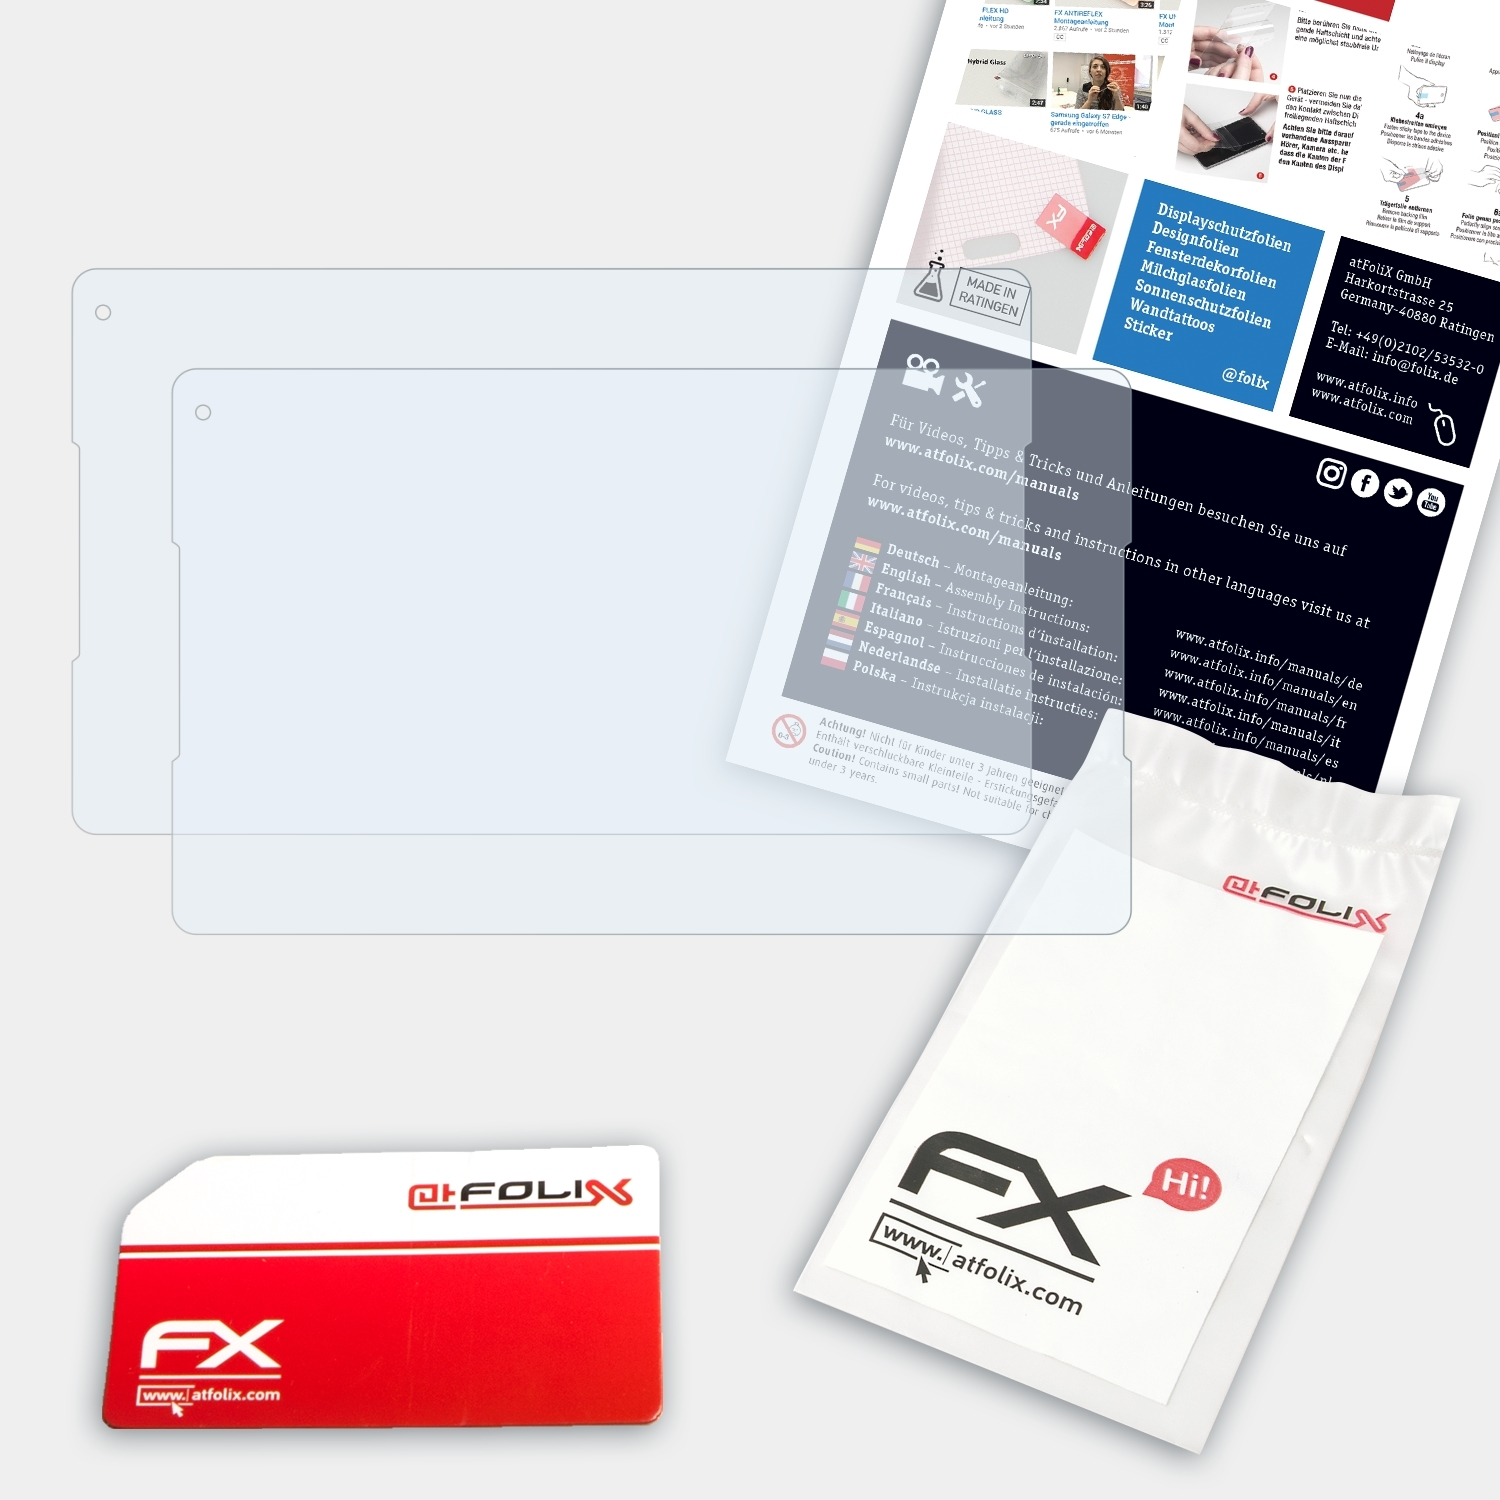 Prime Vodafone 2x 7) FX-Clear ATFOLIX Displayschutz(für Tab